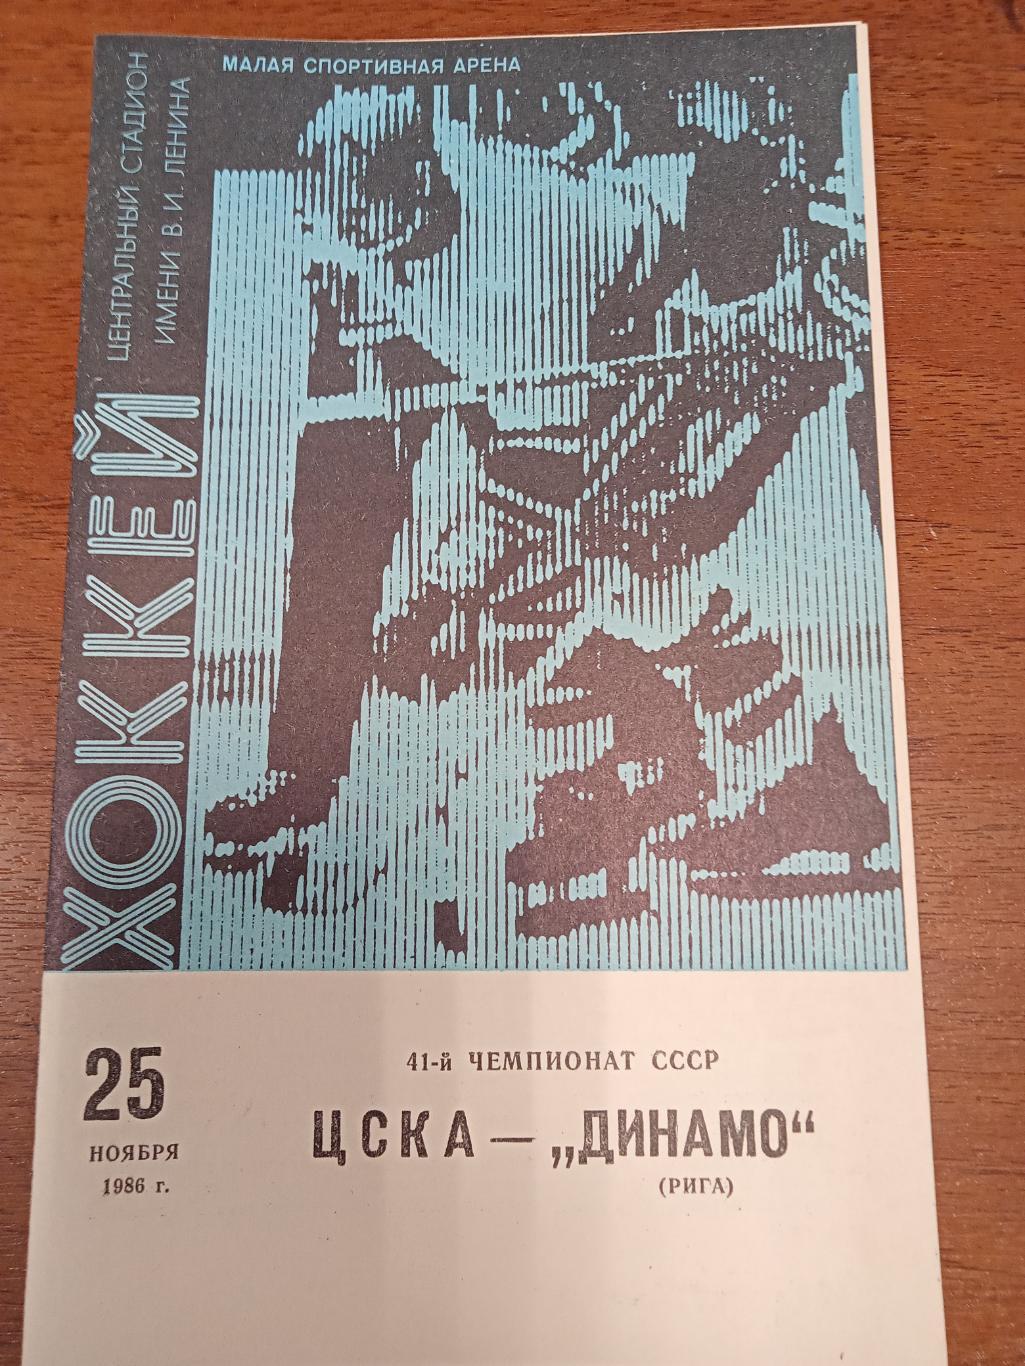 ЦСКА - Динамо Москва25 ноября 1986